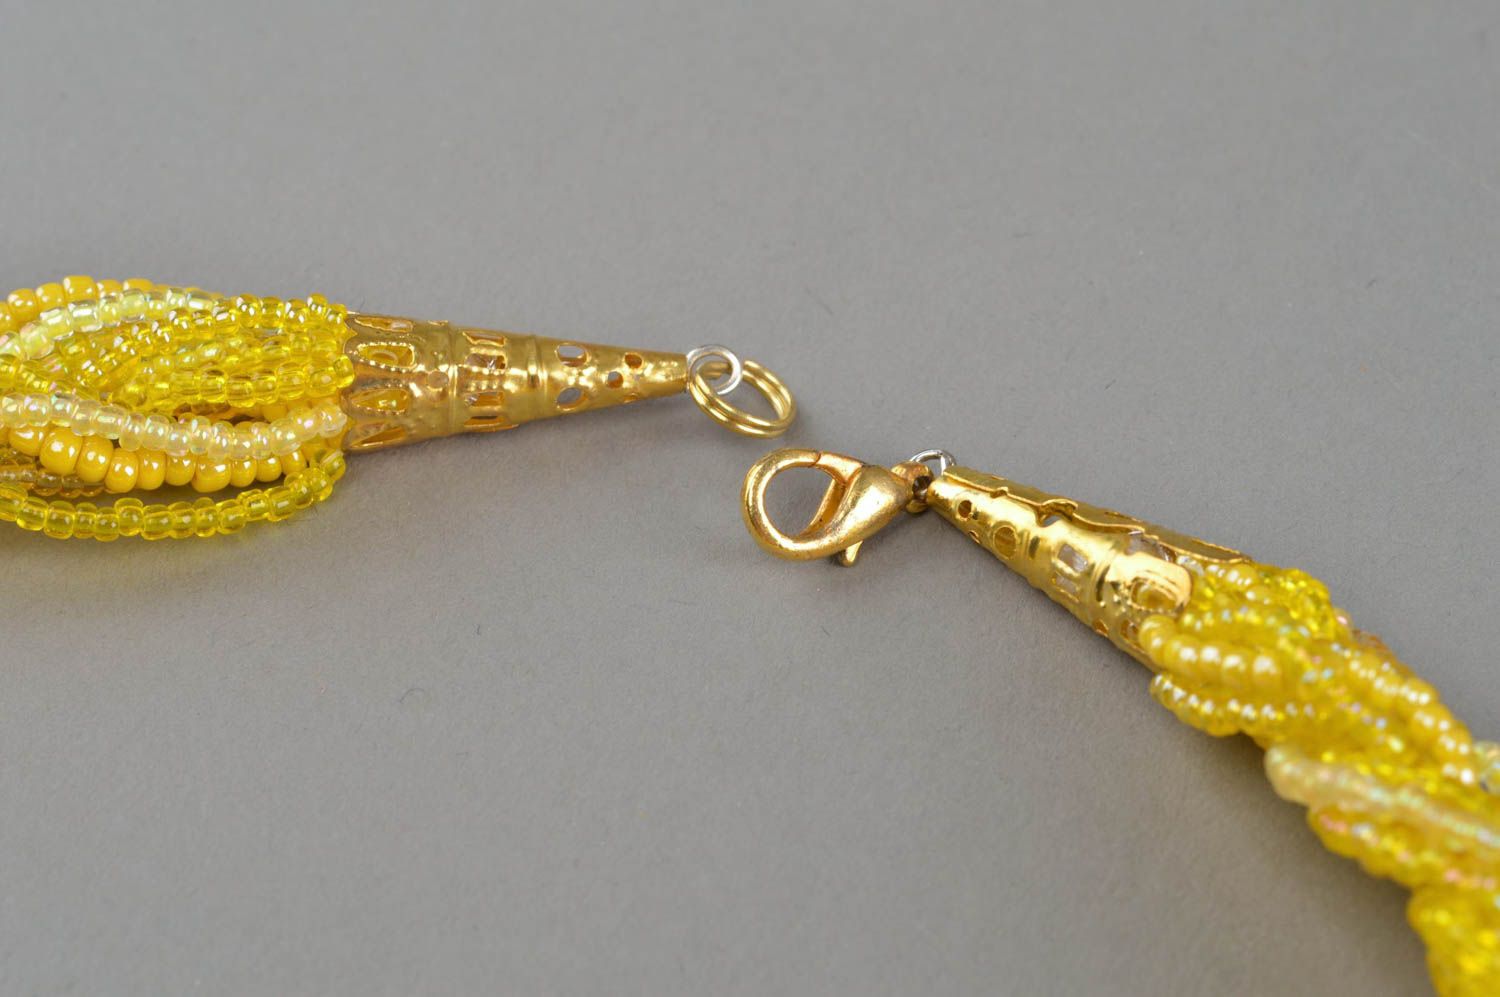 Ожерелье из бисера плетеное ручной работы оригинальное желтое косичкой фото 4